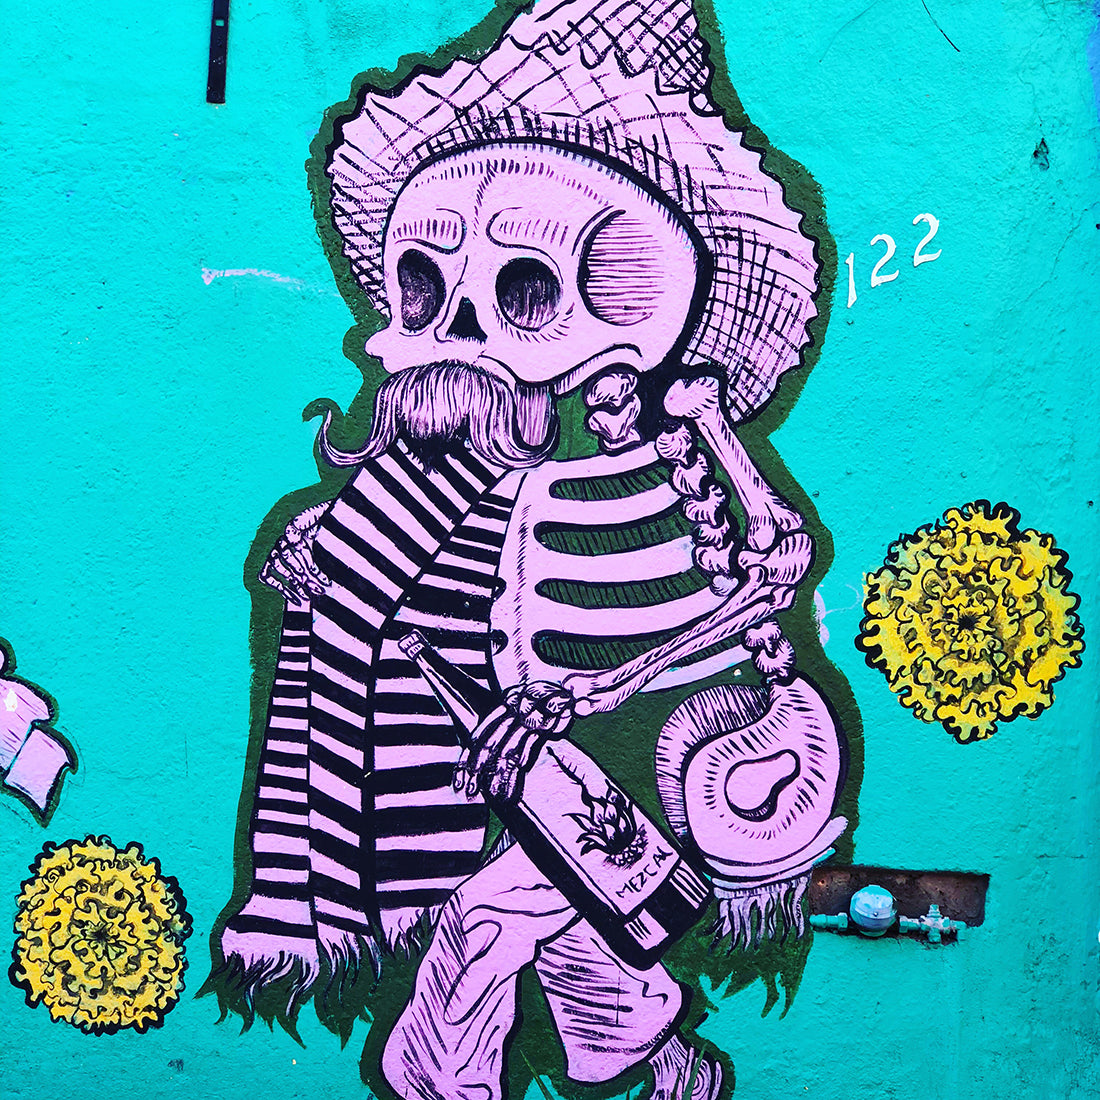 Five Must-see Street Art Murals in Oaxaca